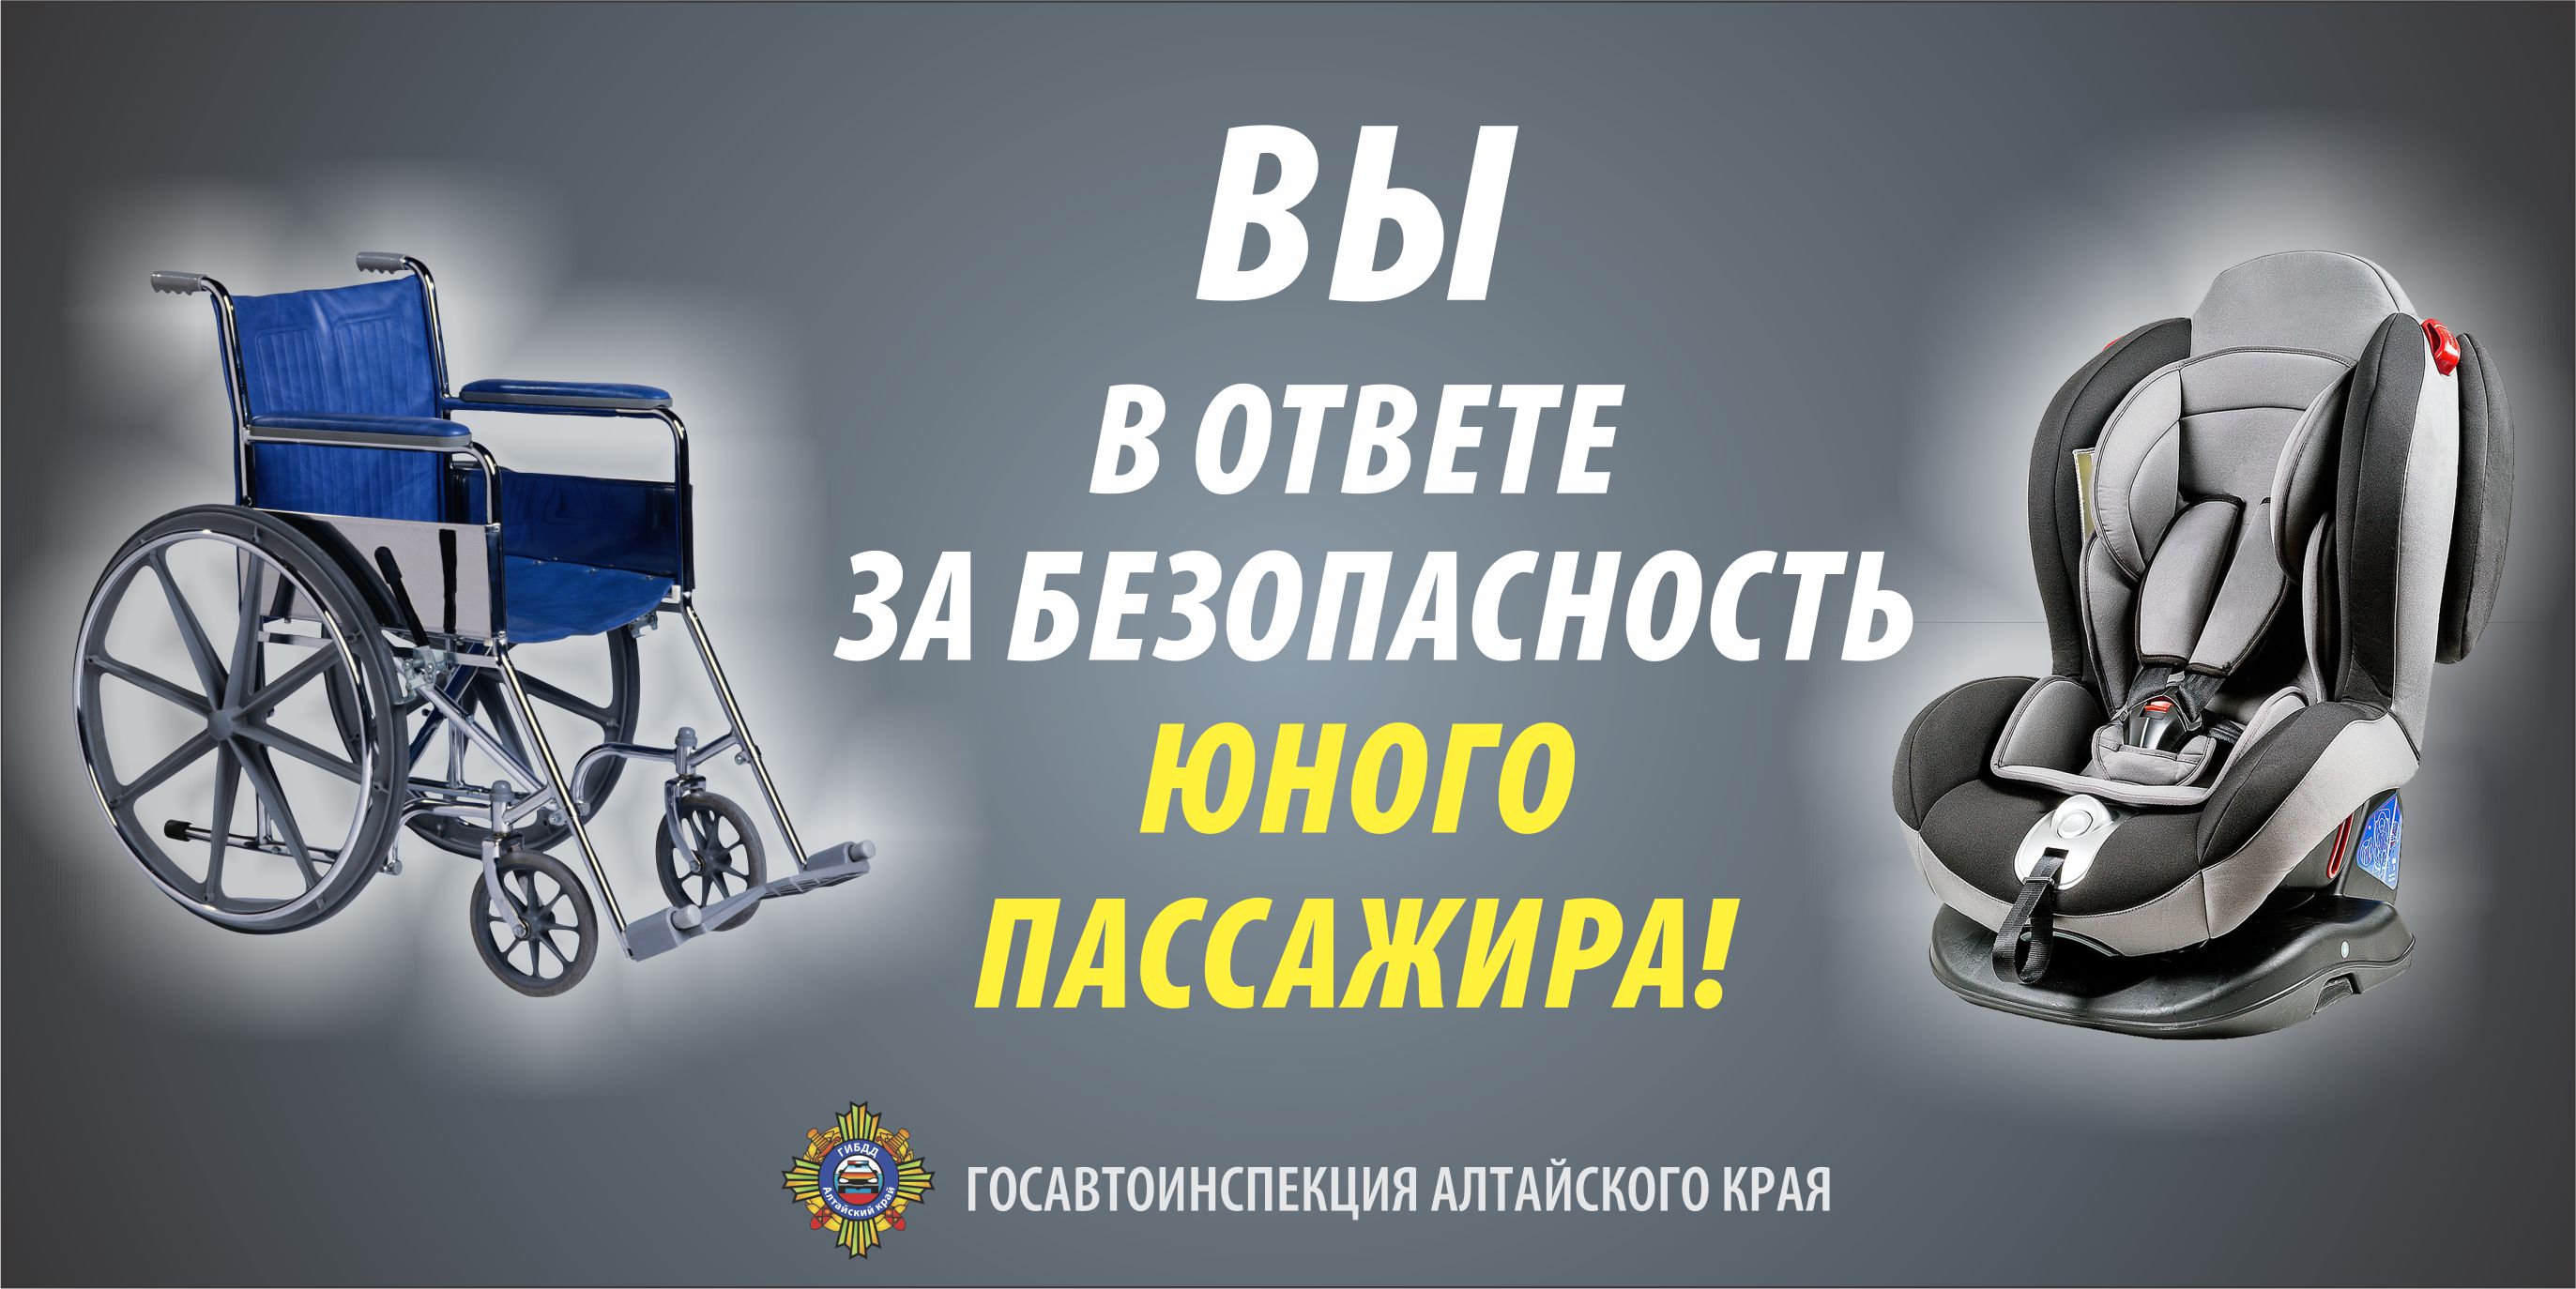 Госавтоинспекция г. Белокурихи призывает соблюдать ПДД  родителей-водителей.